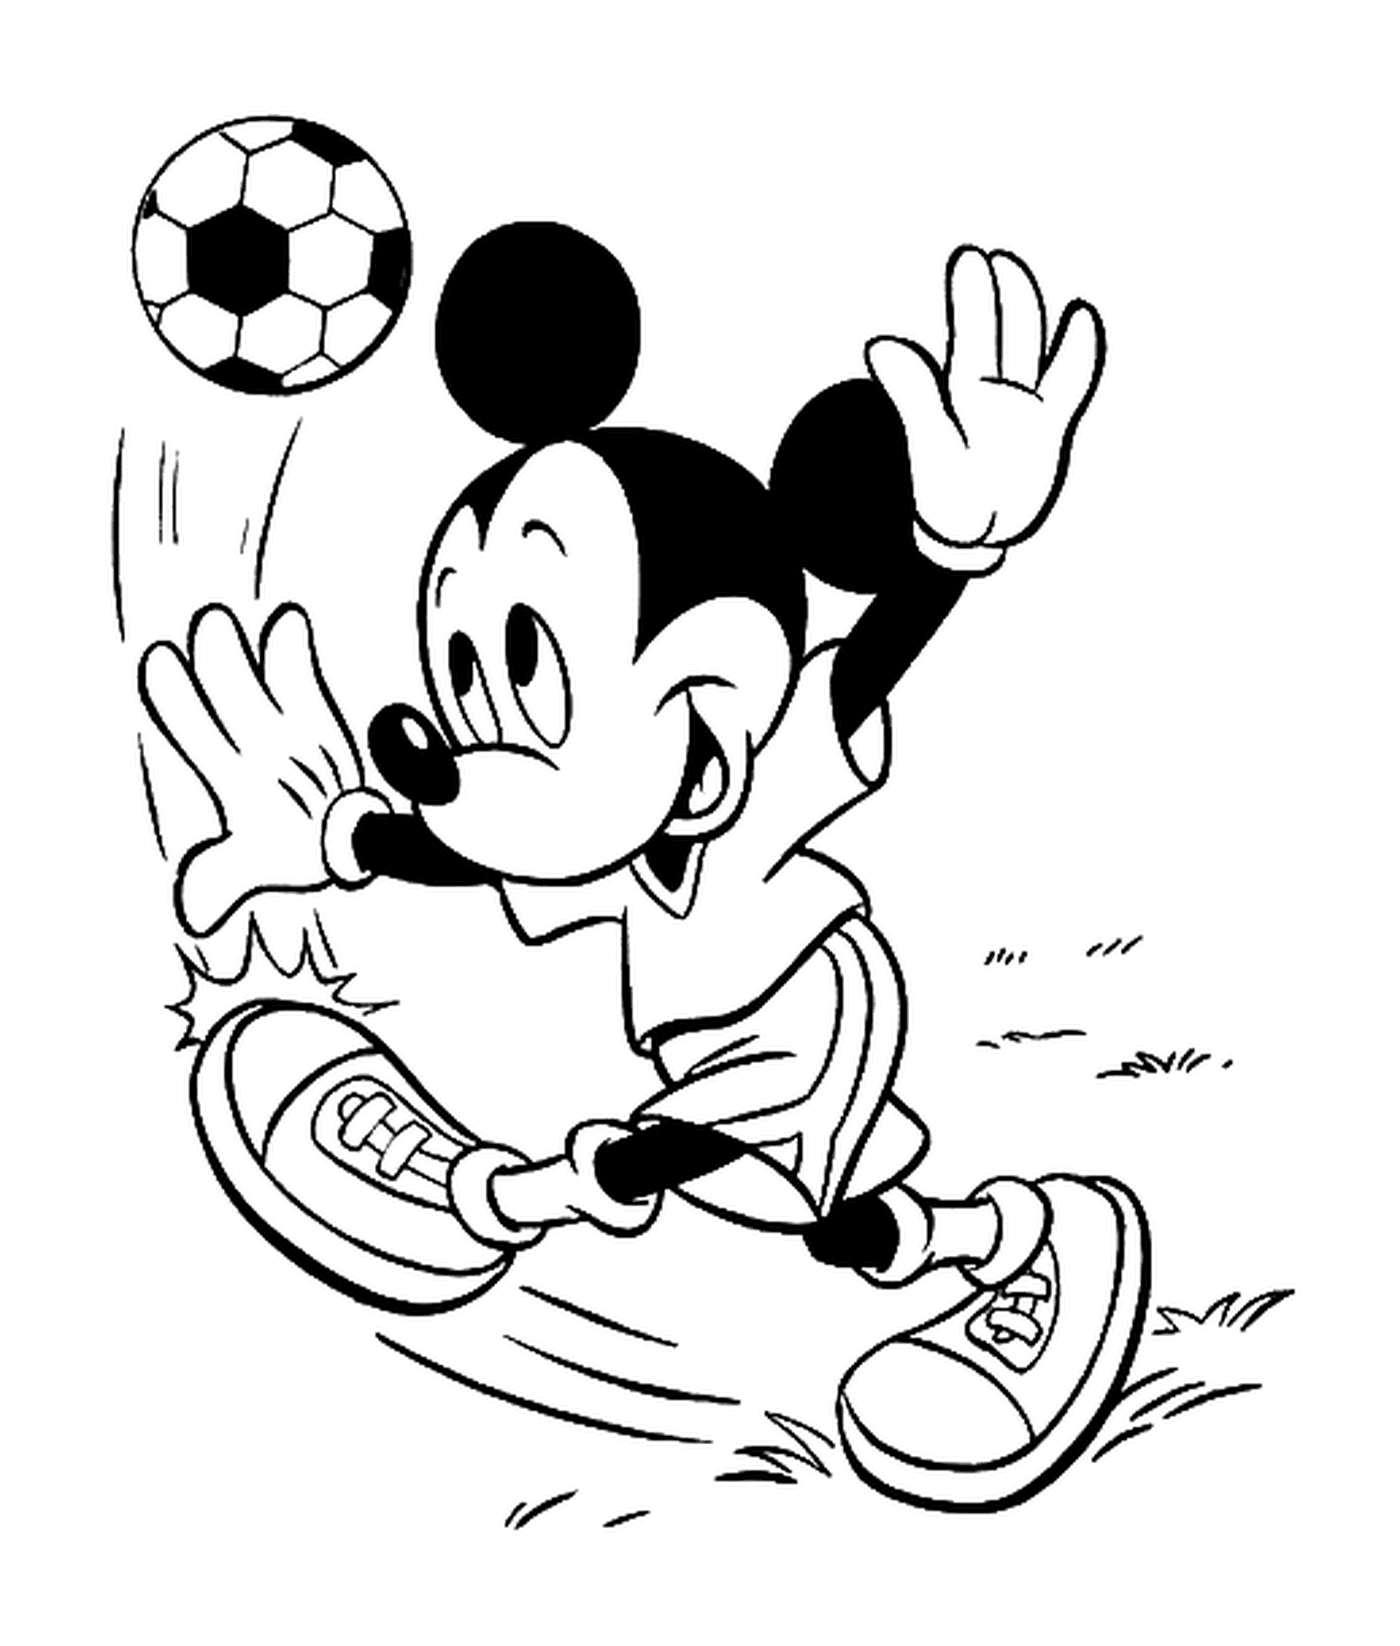  मिकी फुटबॉल गेंद के साथ फुटबॉल खेलता है 